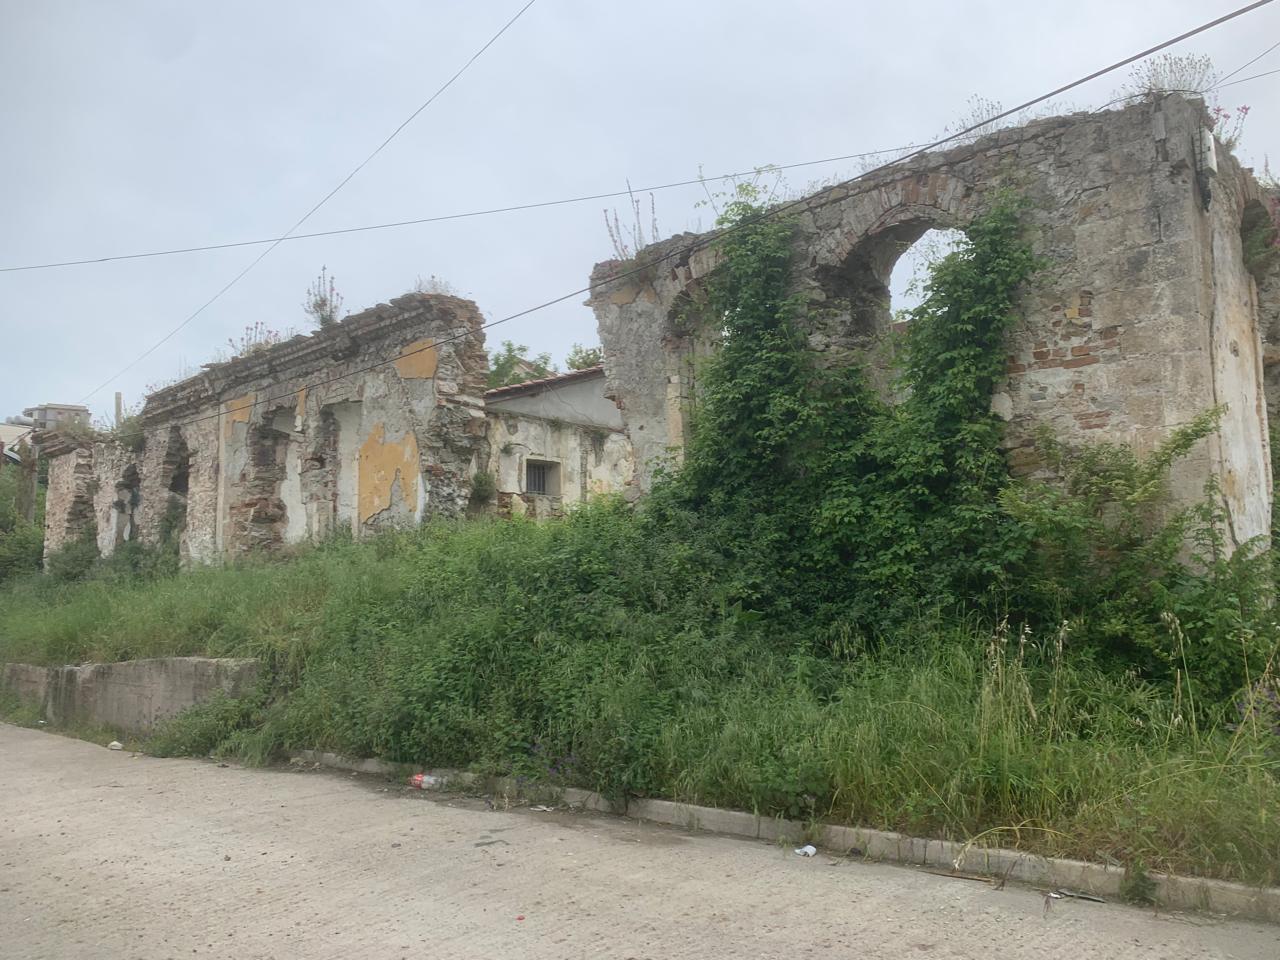 Ndërtesa ku u burgosën martirët e fesë në Durrës po rrënohet